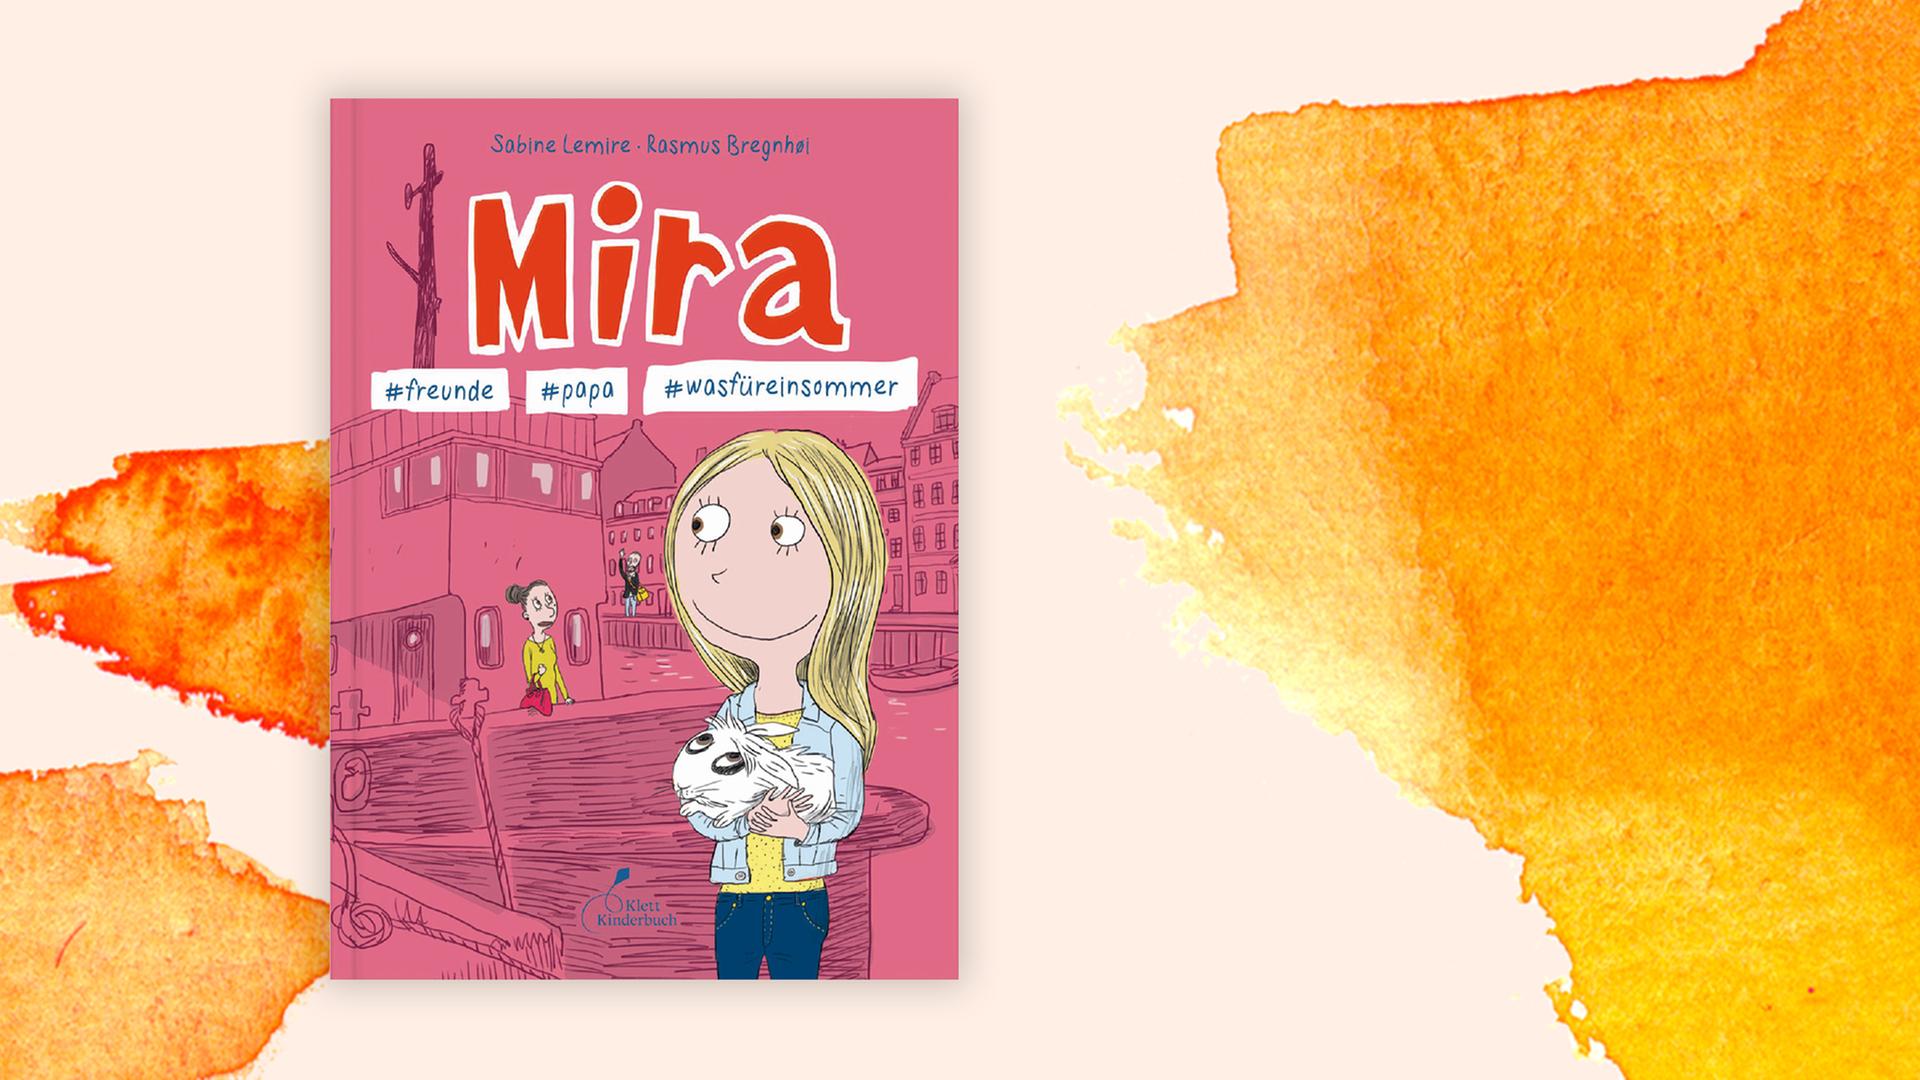 Cover des Buches "Mira #freunde #papa #wasfüreinsommer".